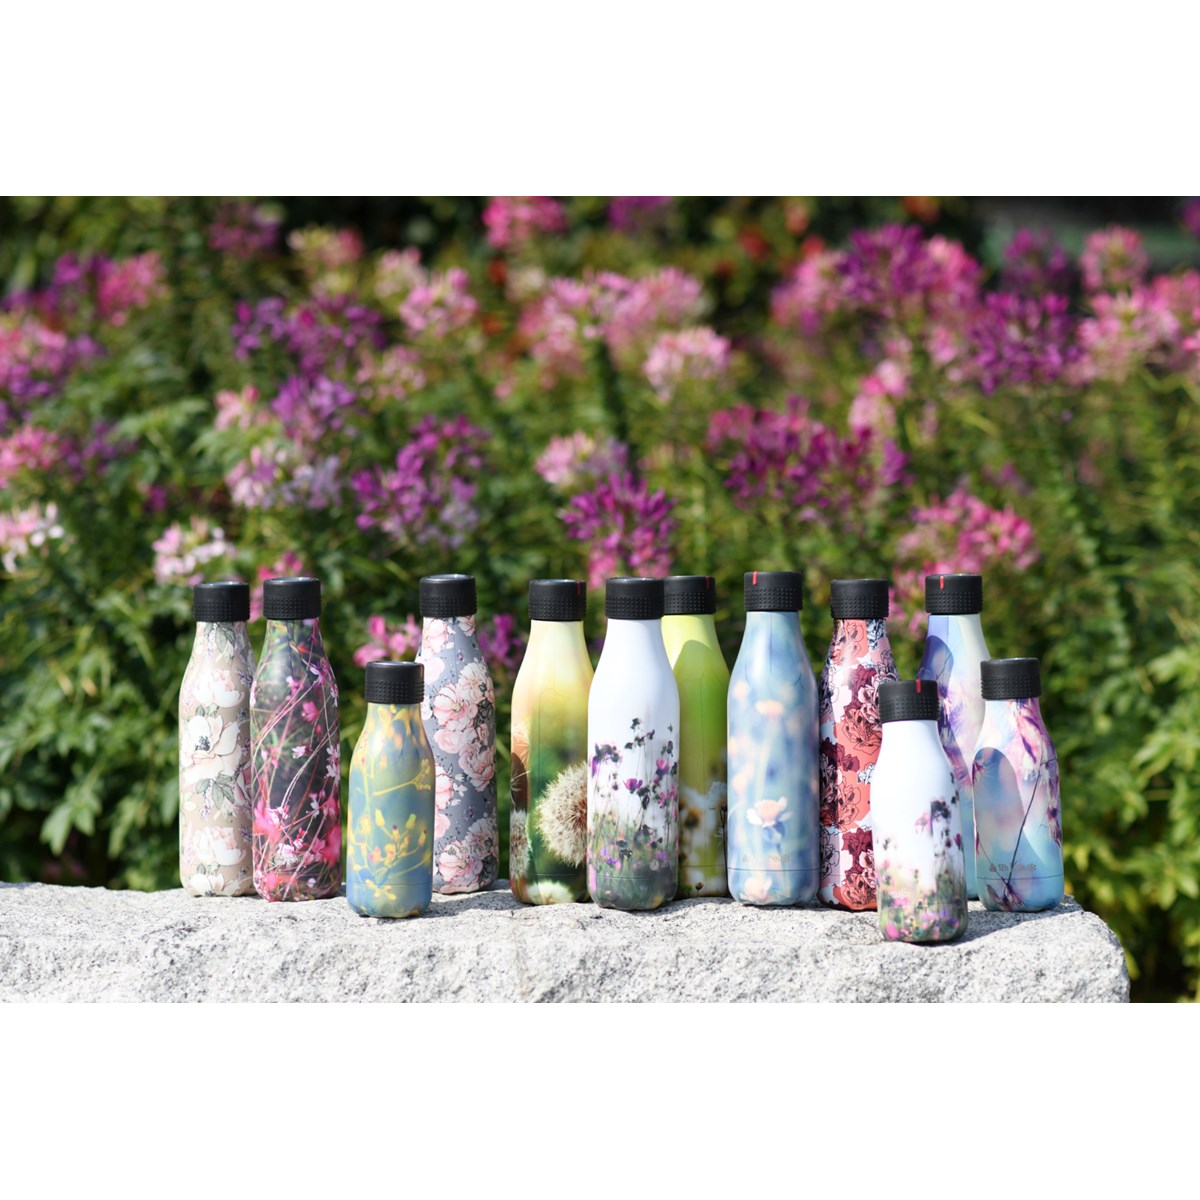 Les Artistes Bottle Up Design termoflaske 0,28L hvit med blomster